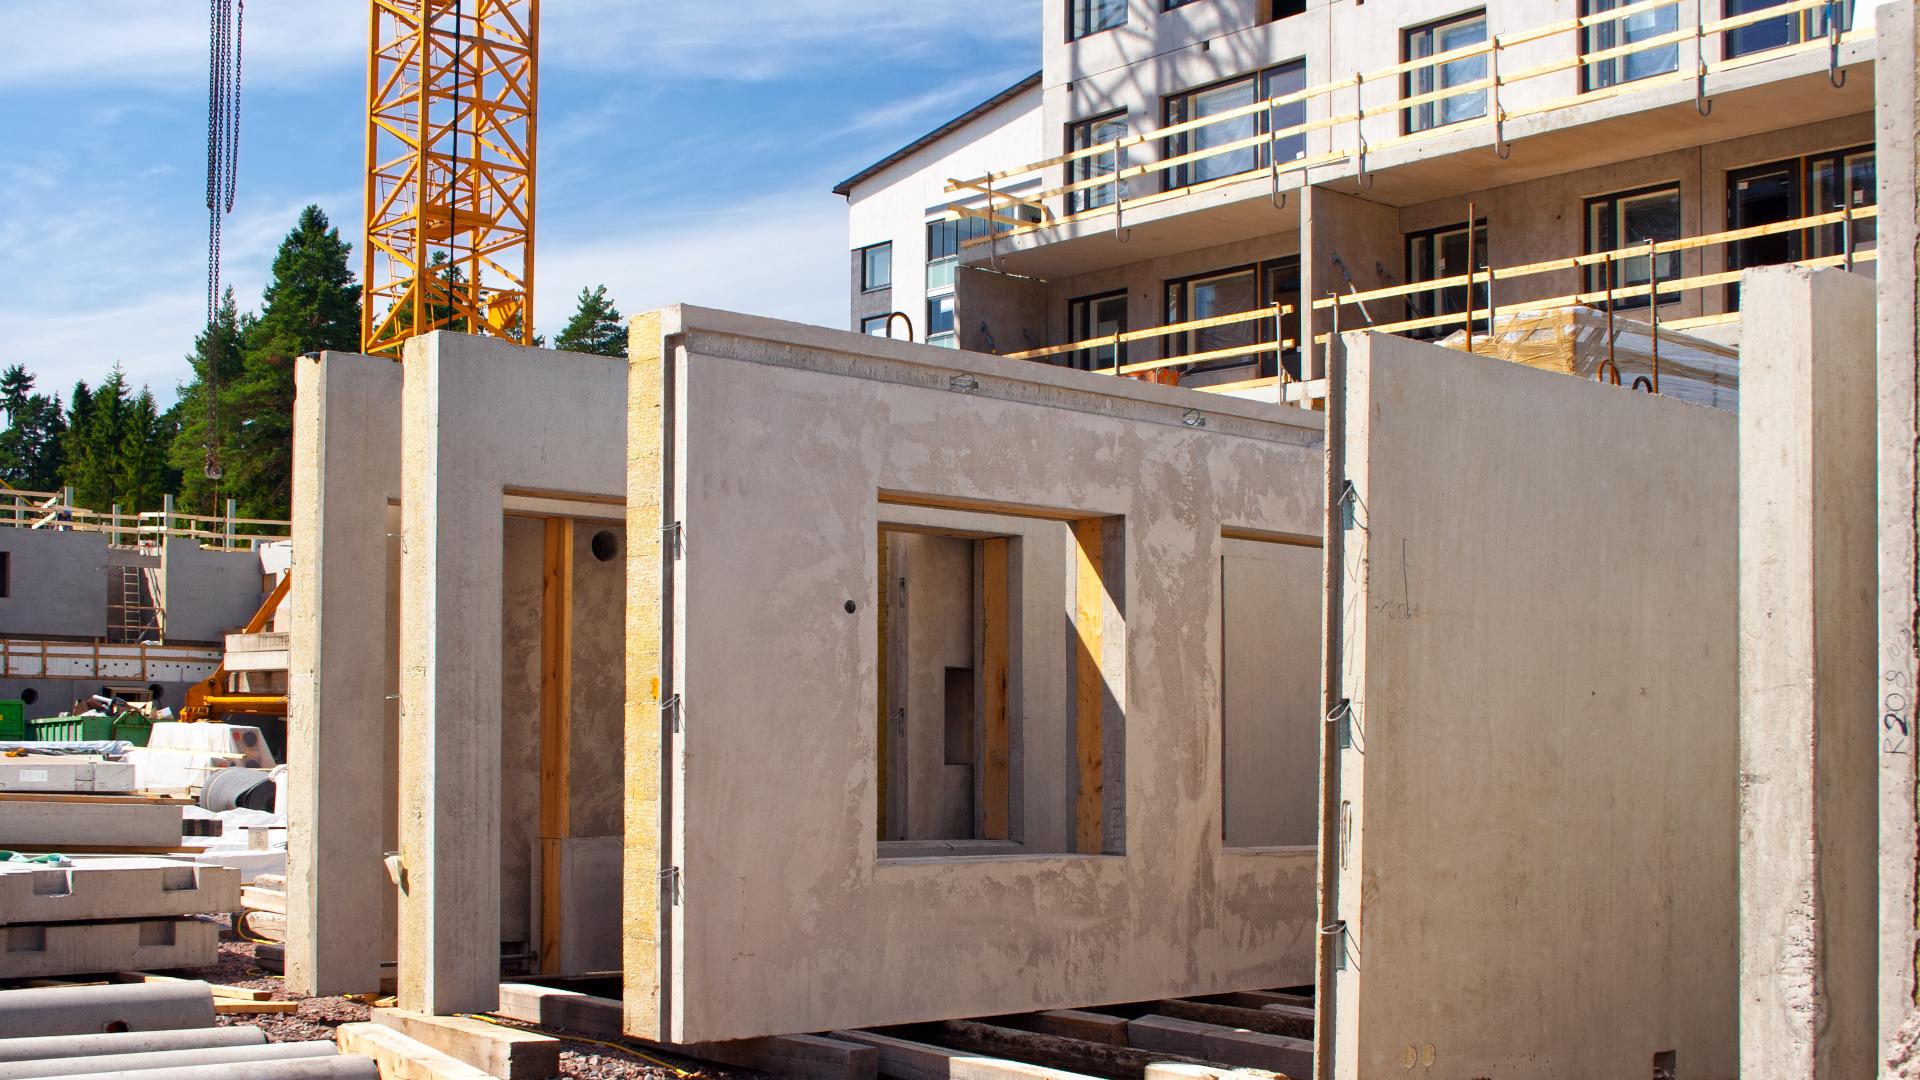 Rakennusmateriaalien kiertotaloutta pyritään tuomaan uudistuksessa osaksi rakentamisen ketjua